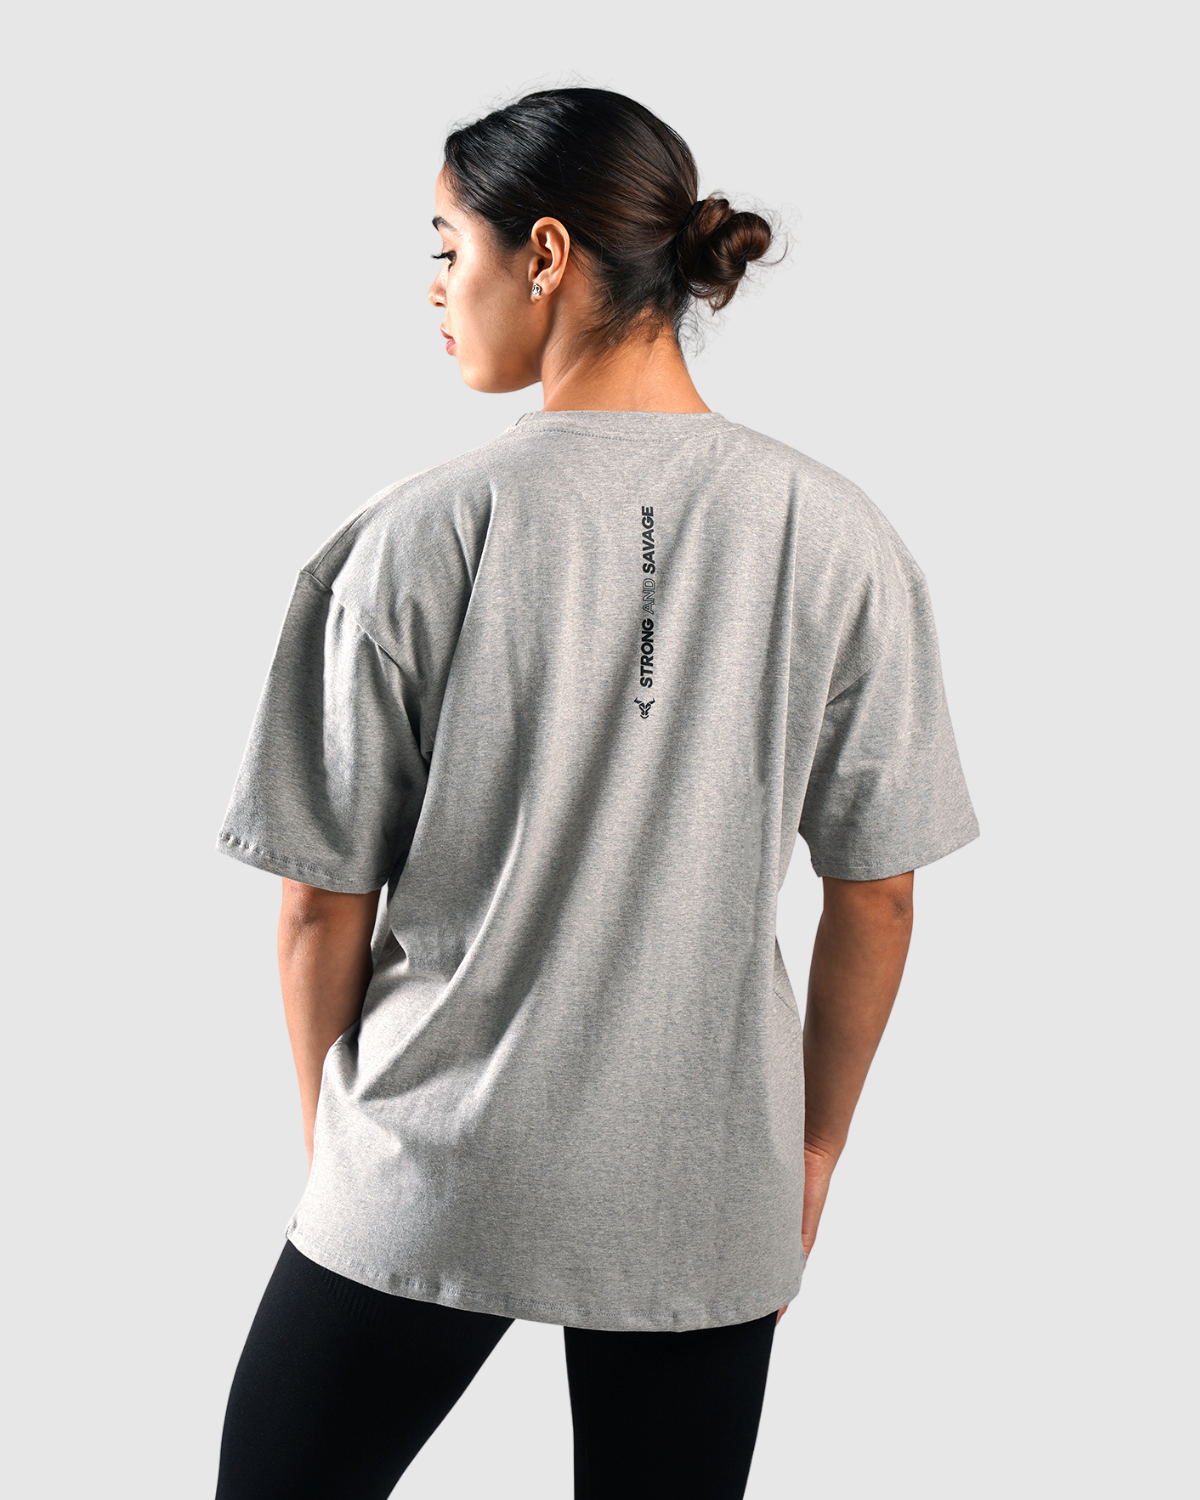 T-shirt Femme Essential Oversize - Gris Chiné